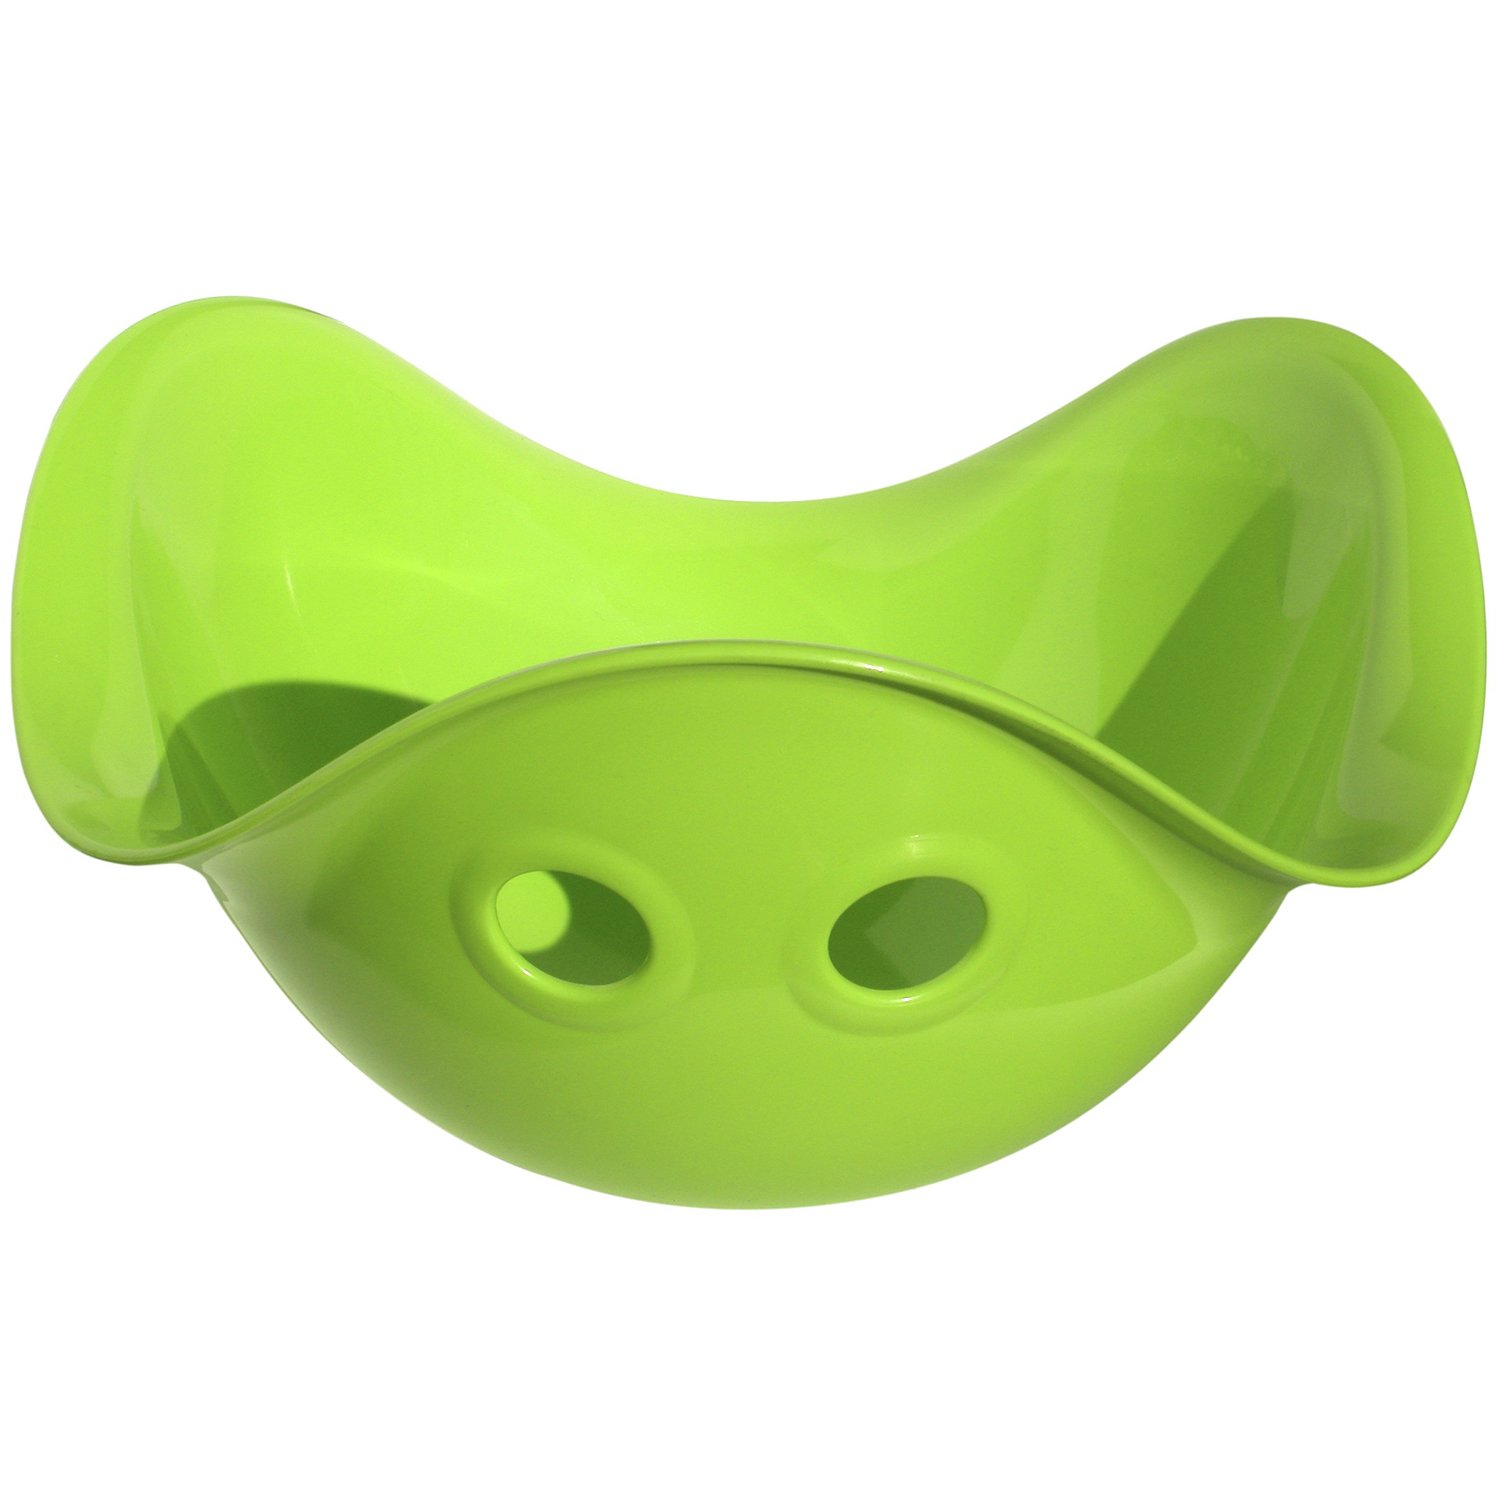 Развивающая игрушка Moluk Билибо, зеленая (43005) - фото 1